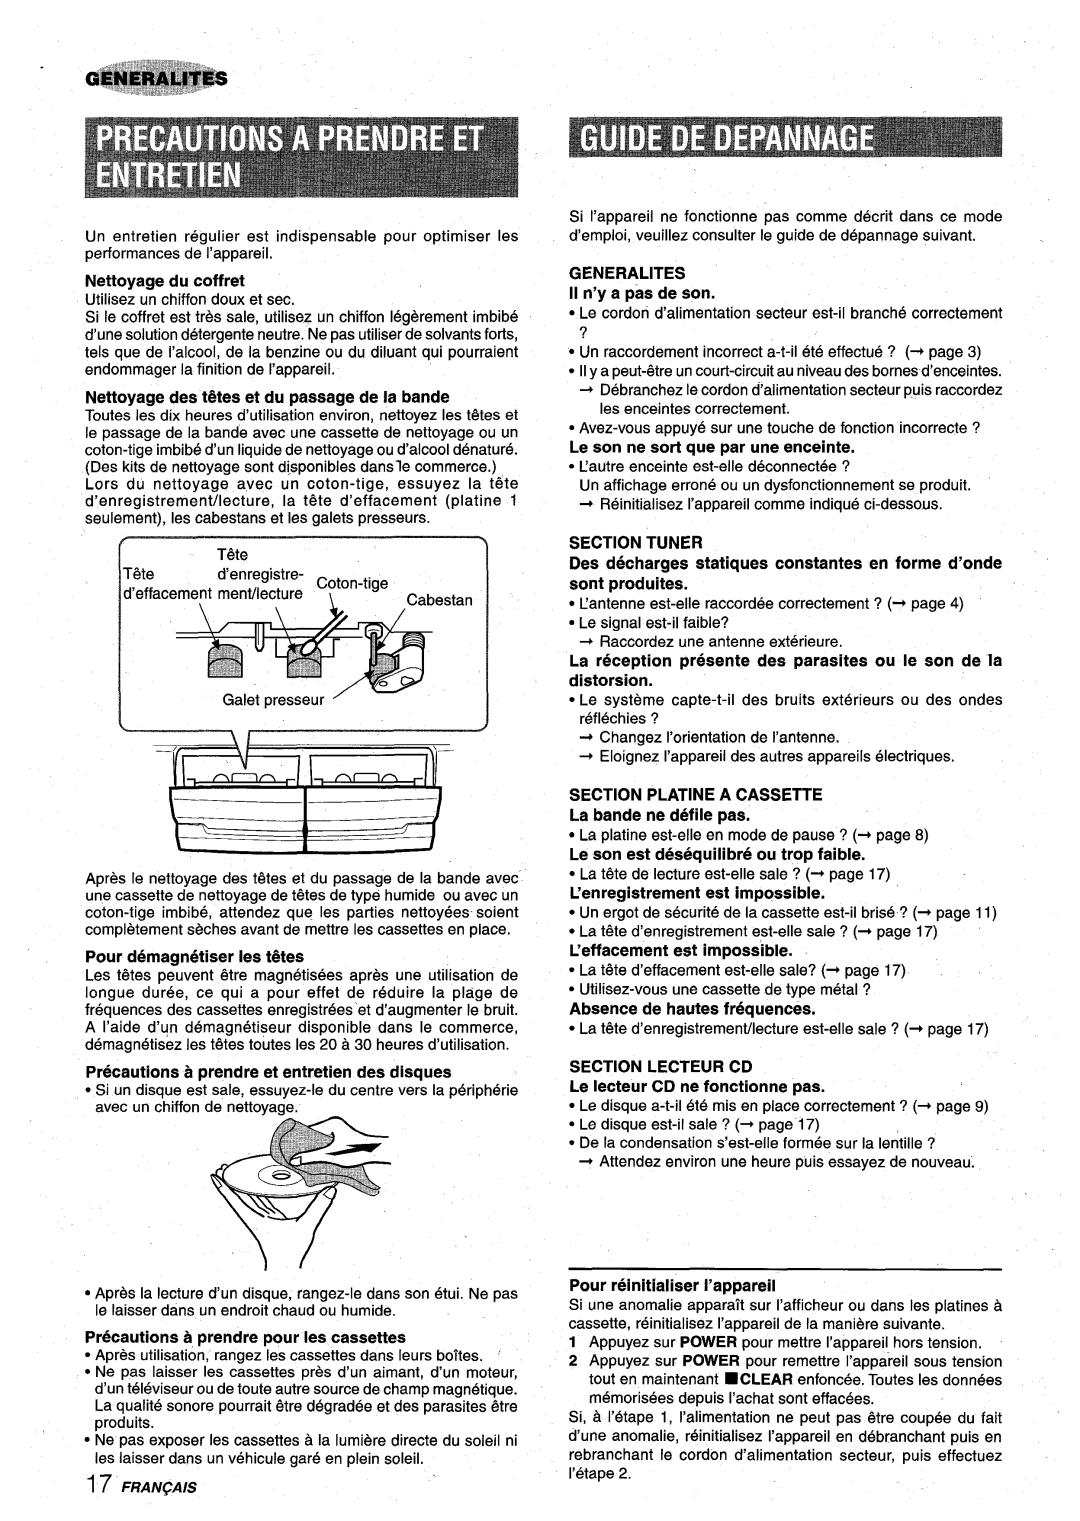 Aiwa XR-M75 manual Section Tuner, Des decharges statiques constants en forme d’onde sent produites, Nettoyage du coffret 